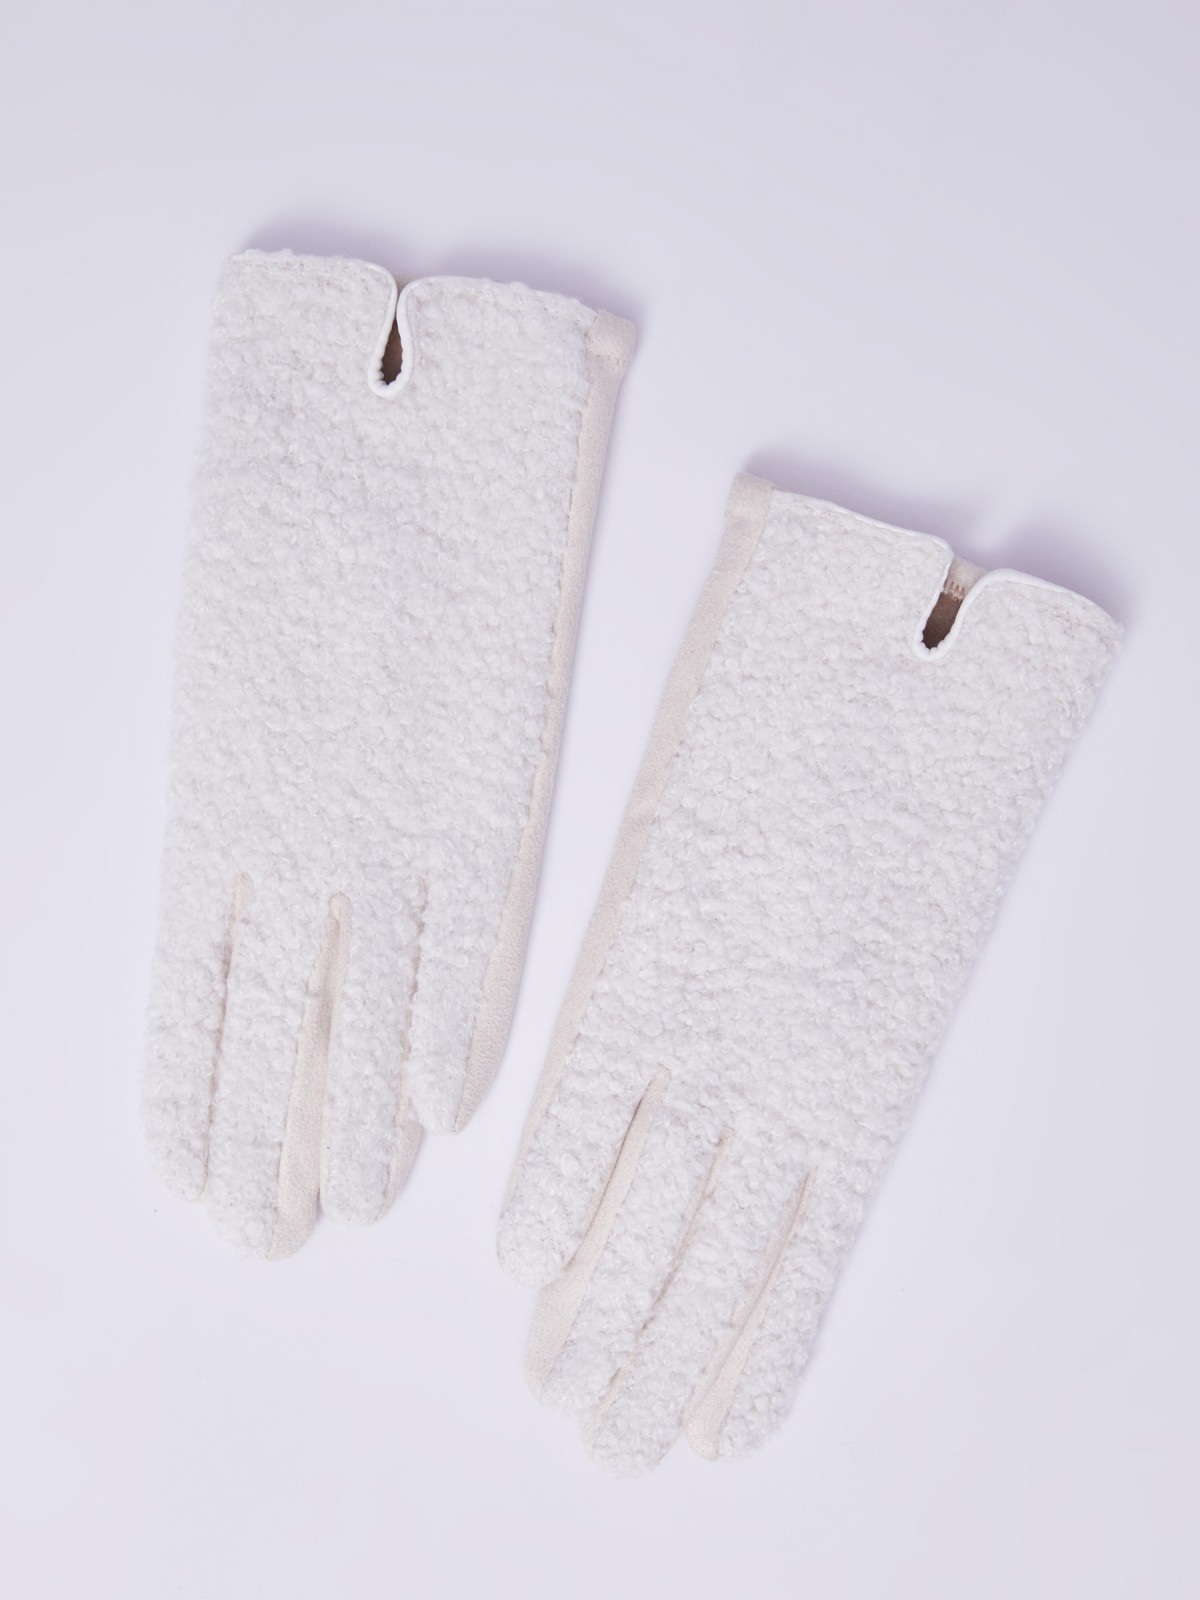 Утеплённые перчатки из искусственного меха с функцией Touch Screen zolla 023339659015, цвет молоко, размер S